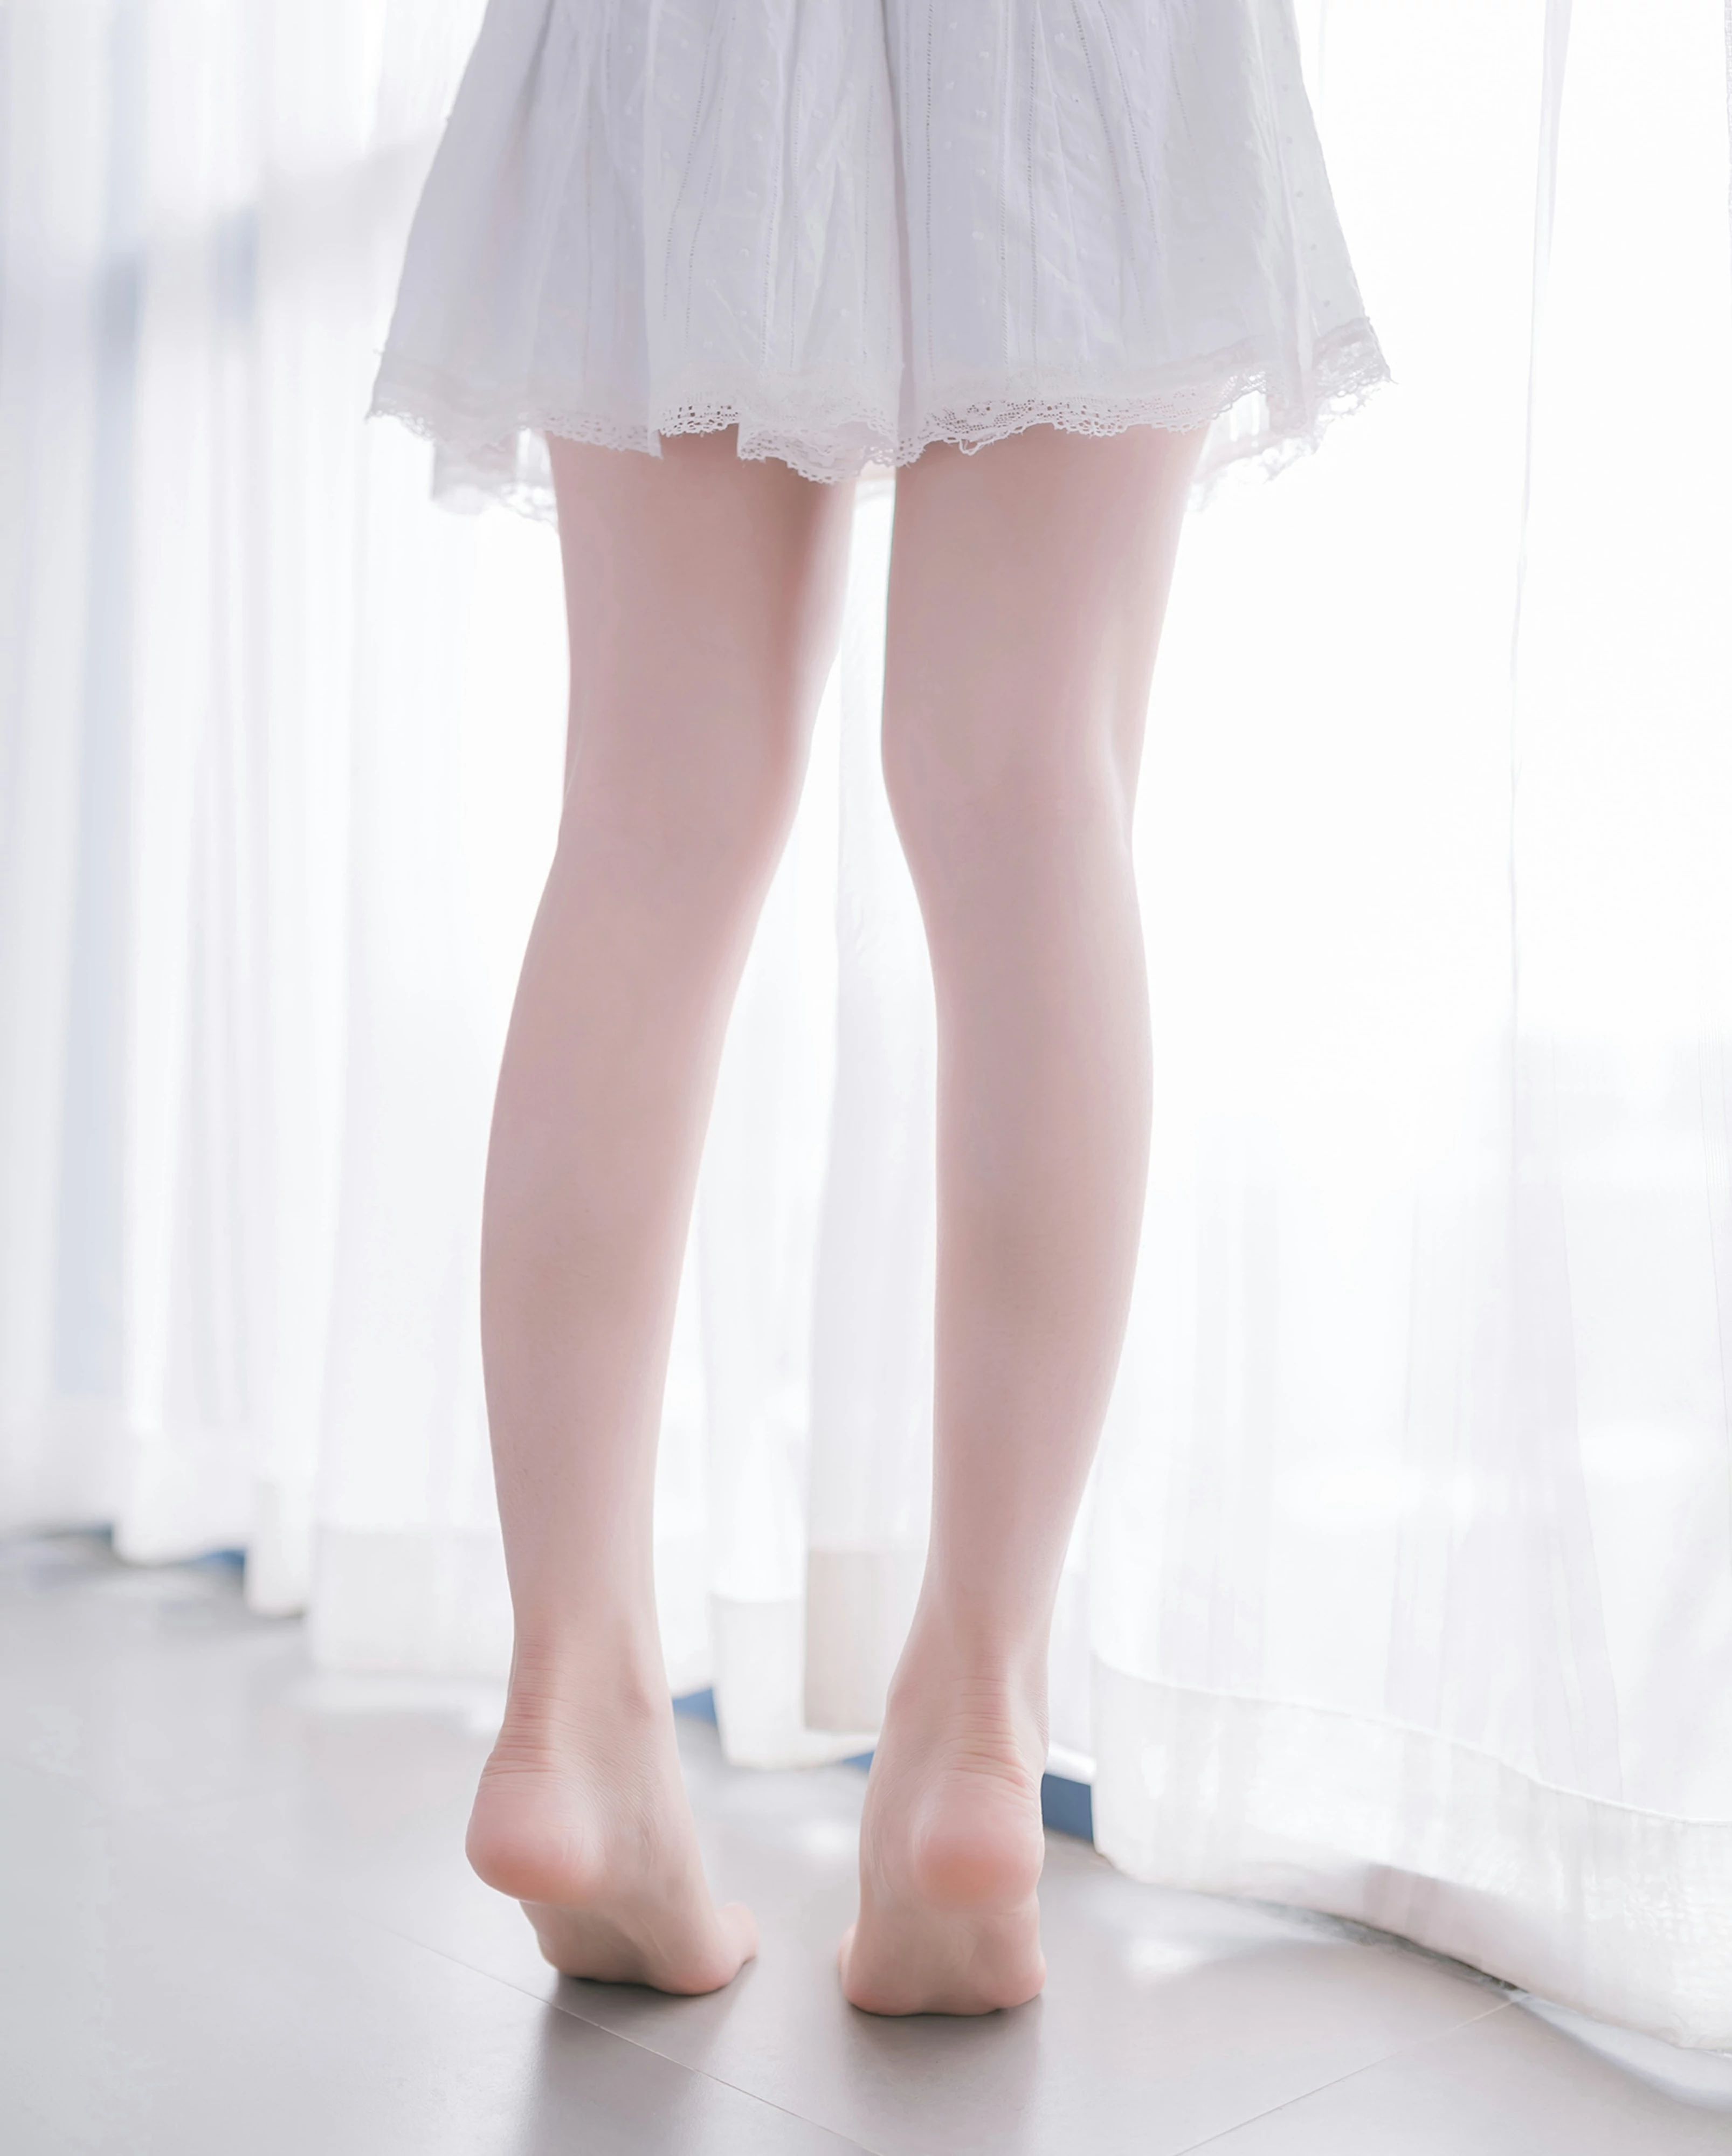 [风之领域]NO.083 性感小萝莉 白色吊带蕾丝连衣裙与美腿玉足私房写真集,